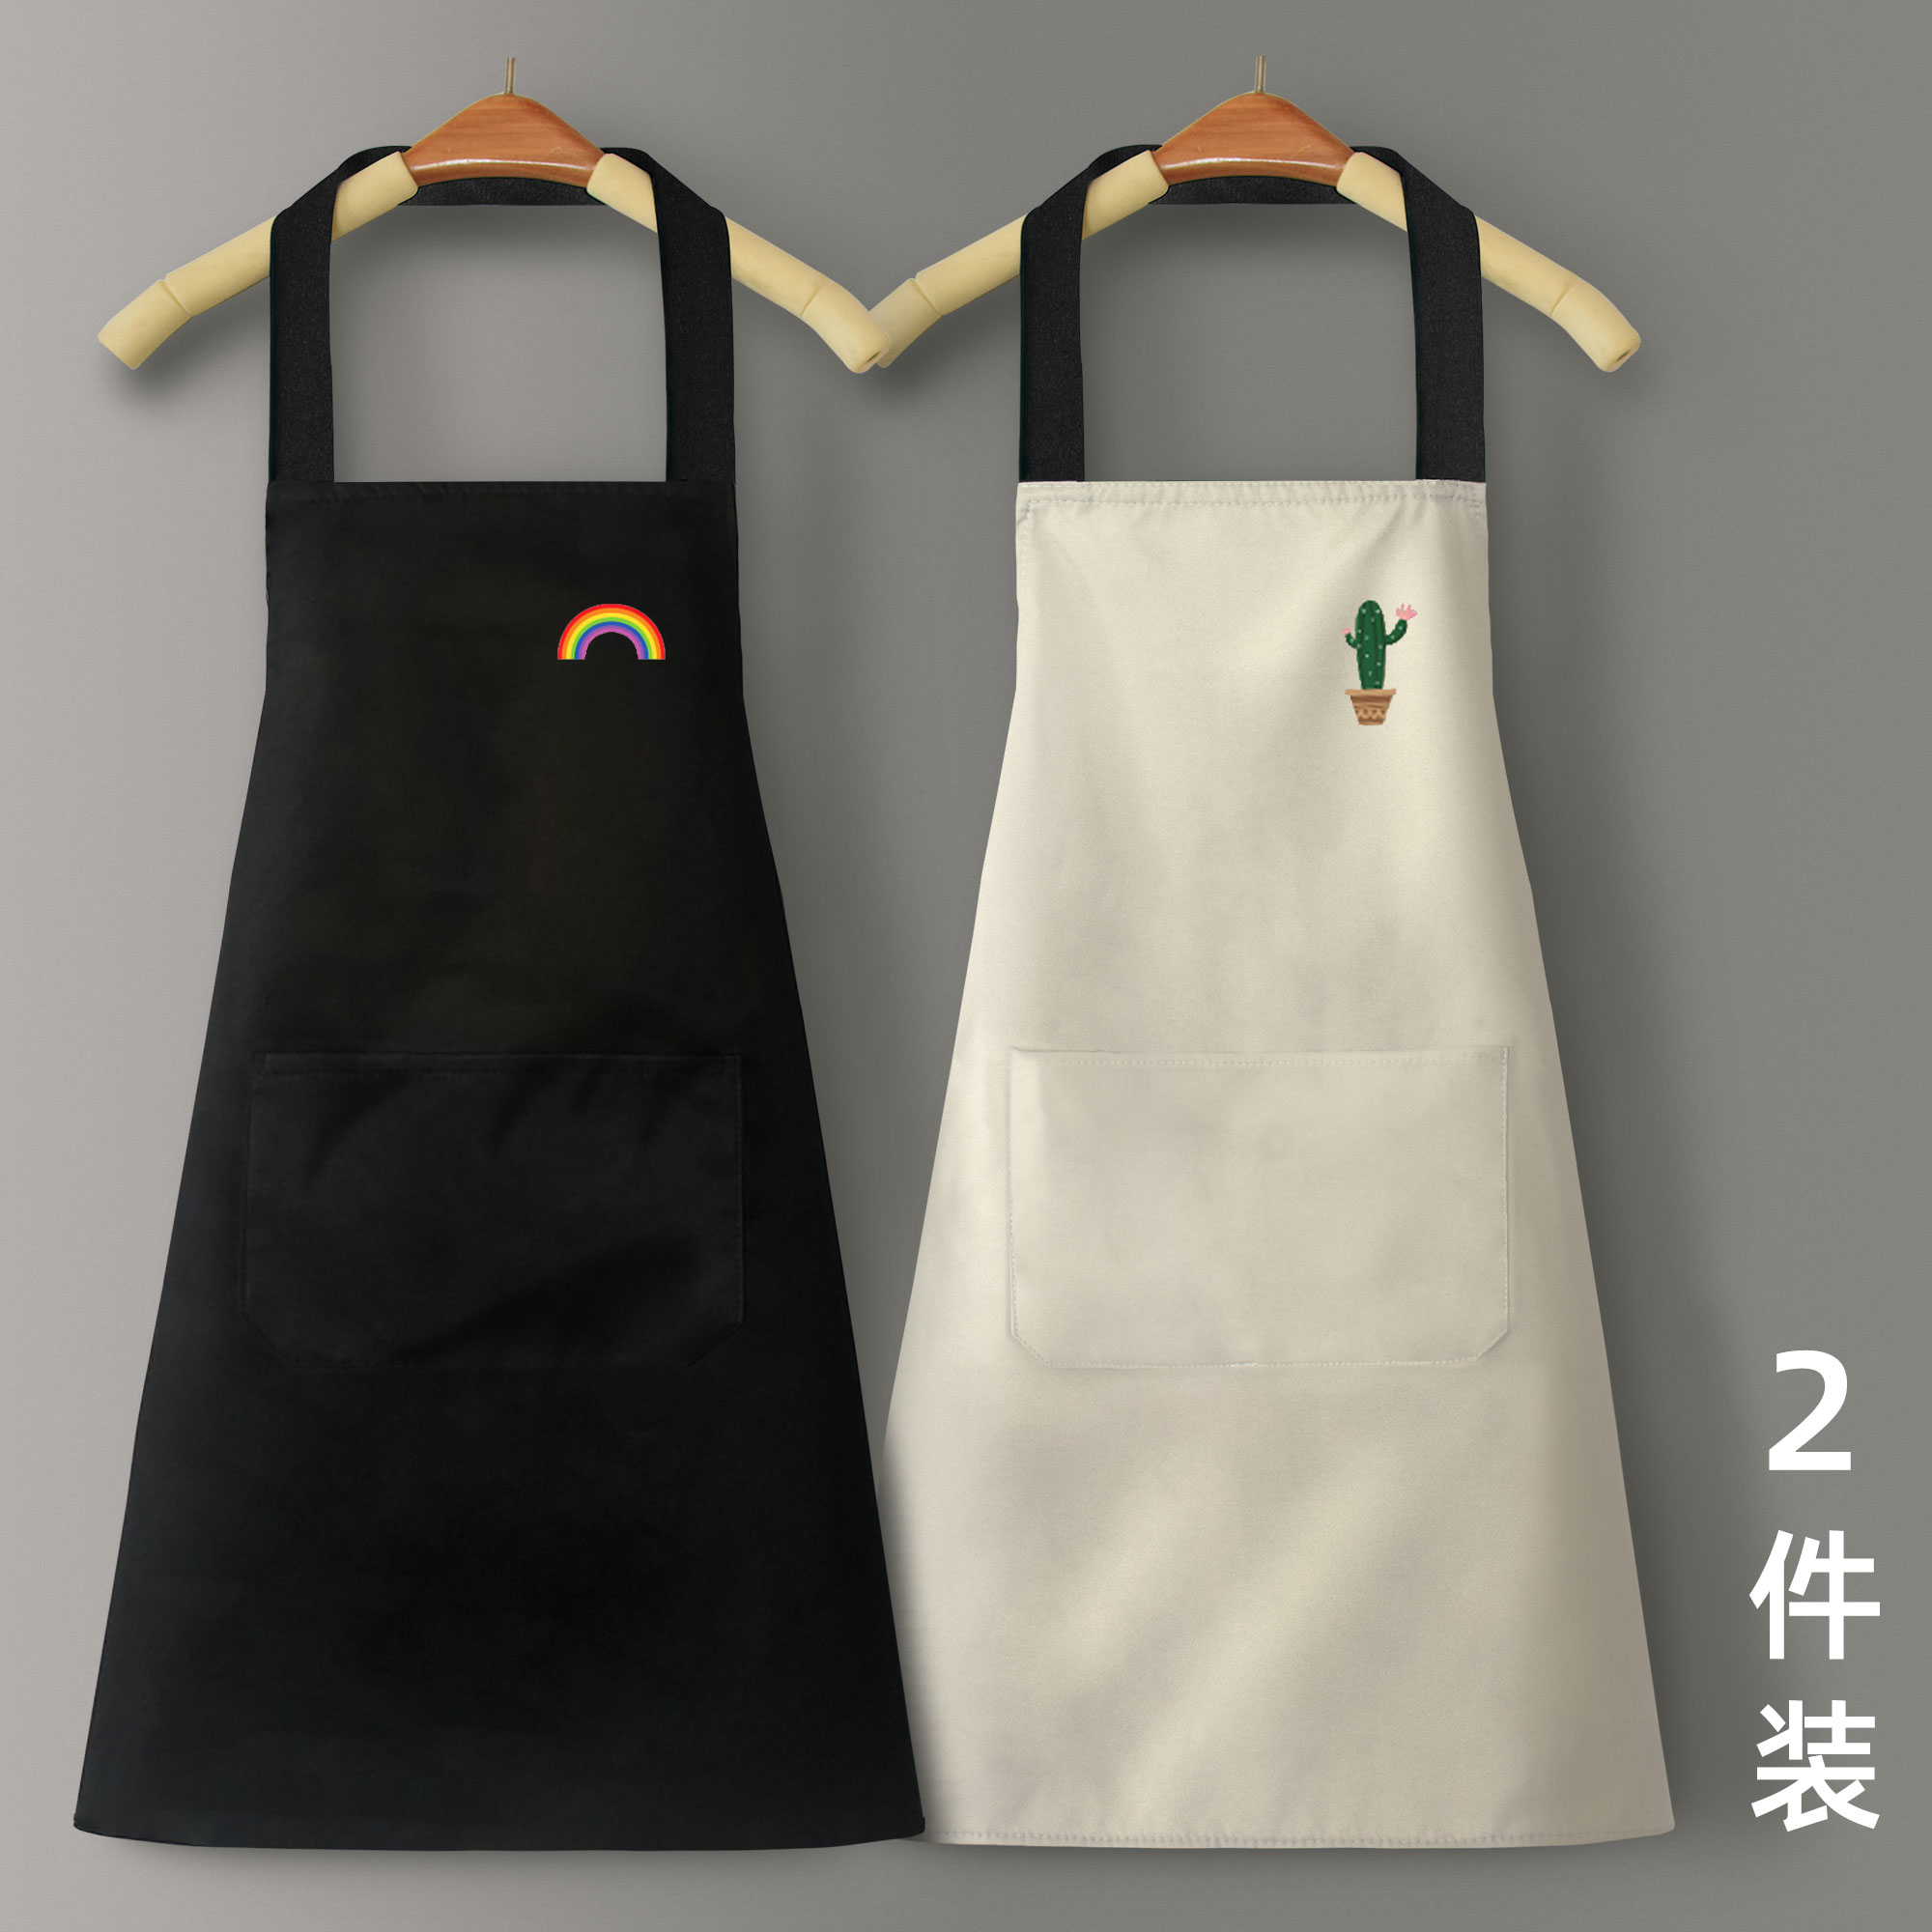 圍裙 圍裙家用廚房防水防油男女工作服布定製logo印字可愛日系韓版時尚『XY22682』